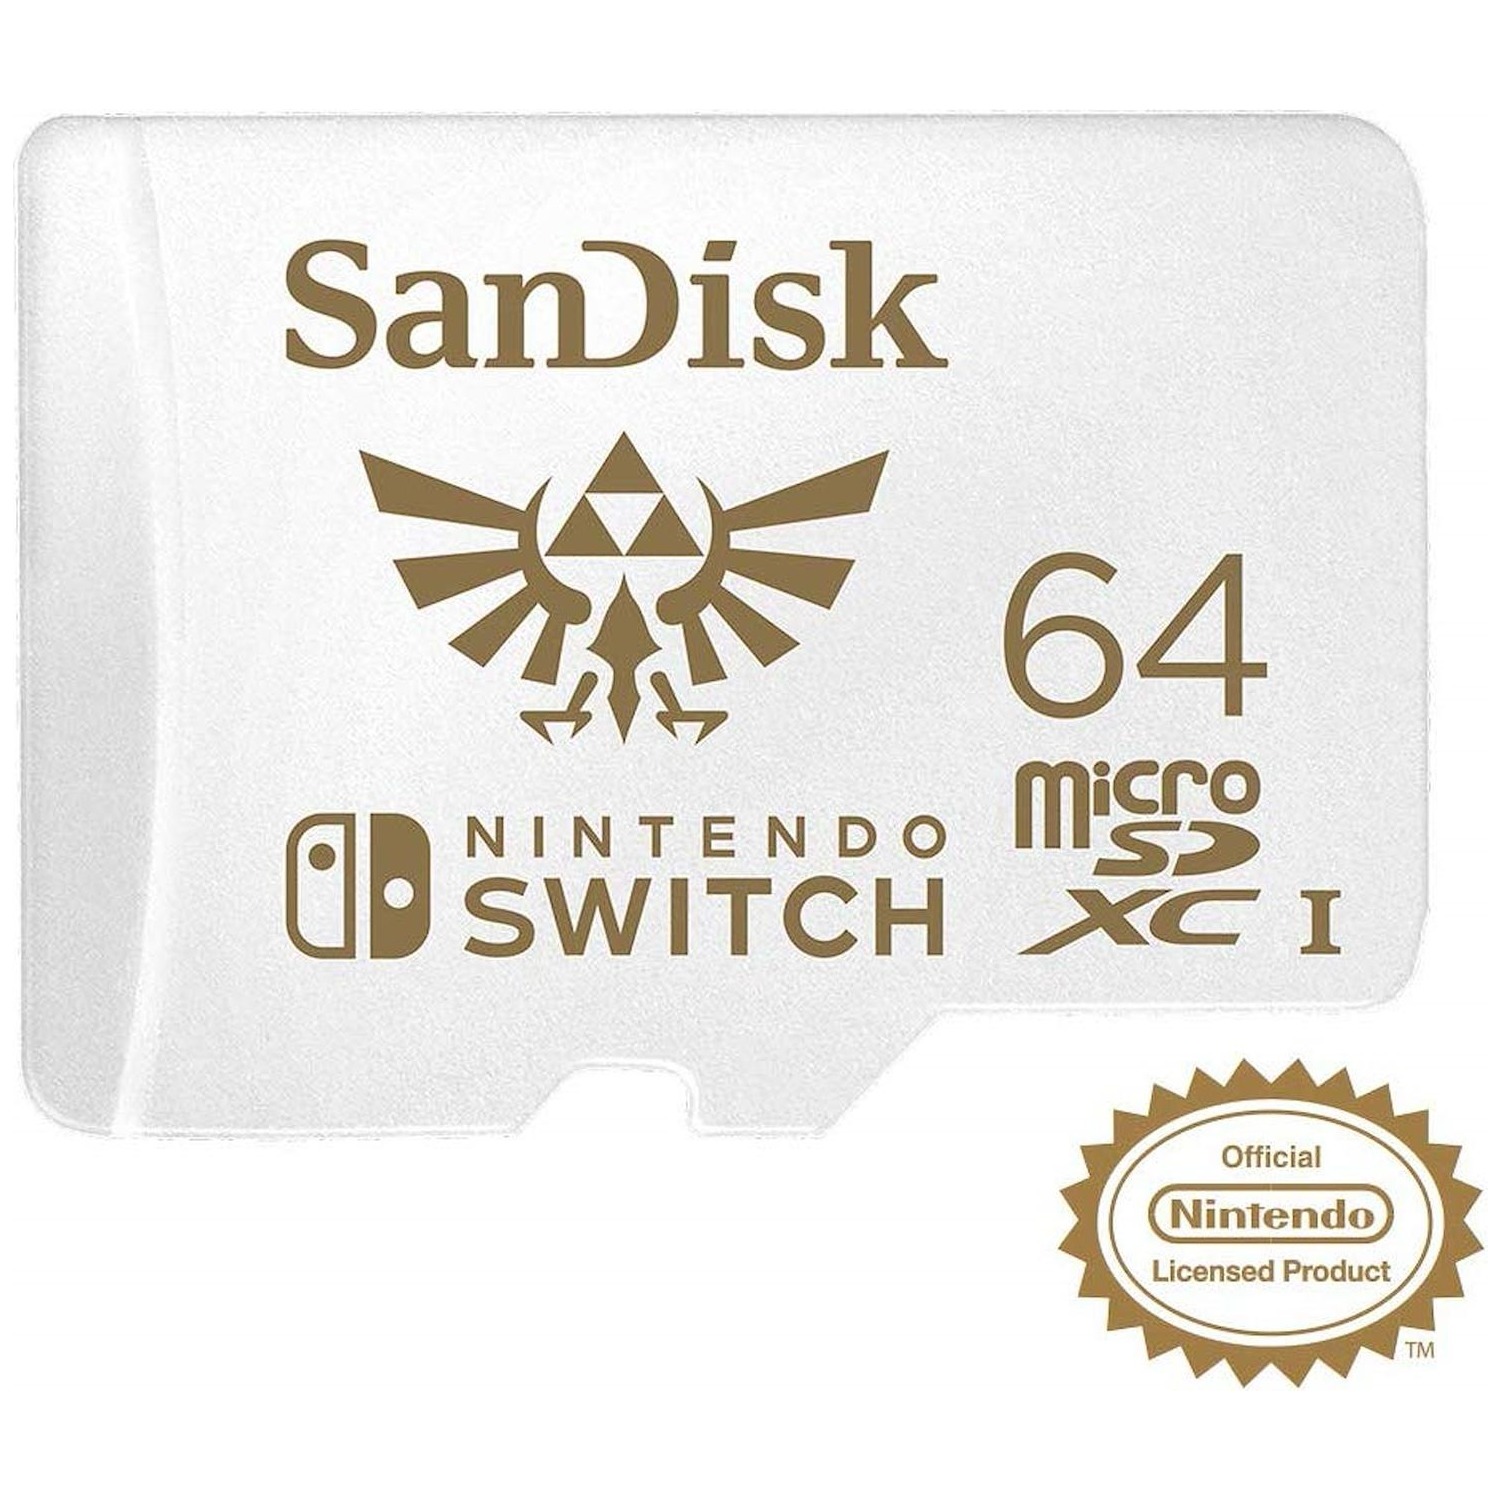 Immagine per MicroSD San Disk per Nintendo Switch 64GB XC da DIMOStore